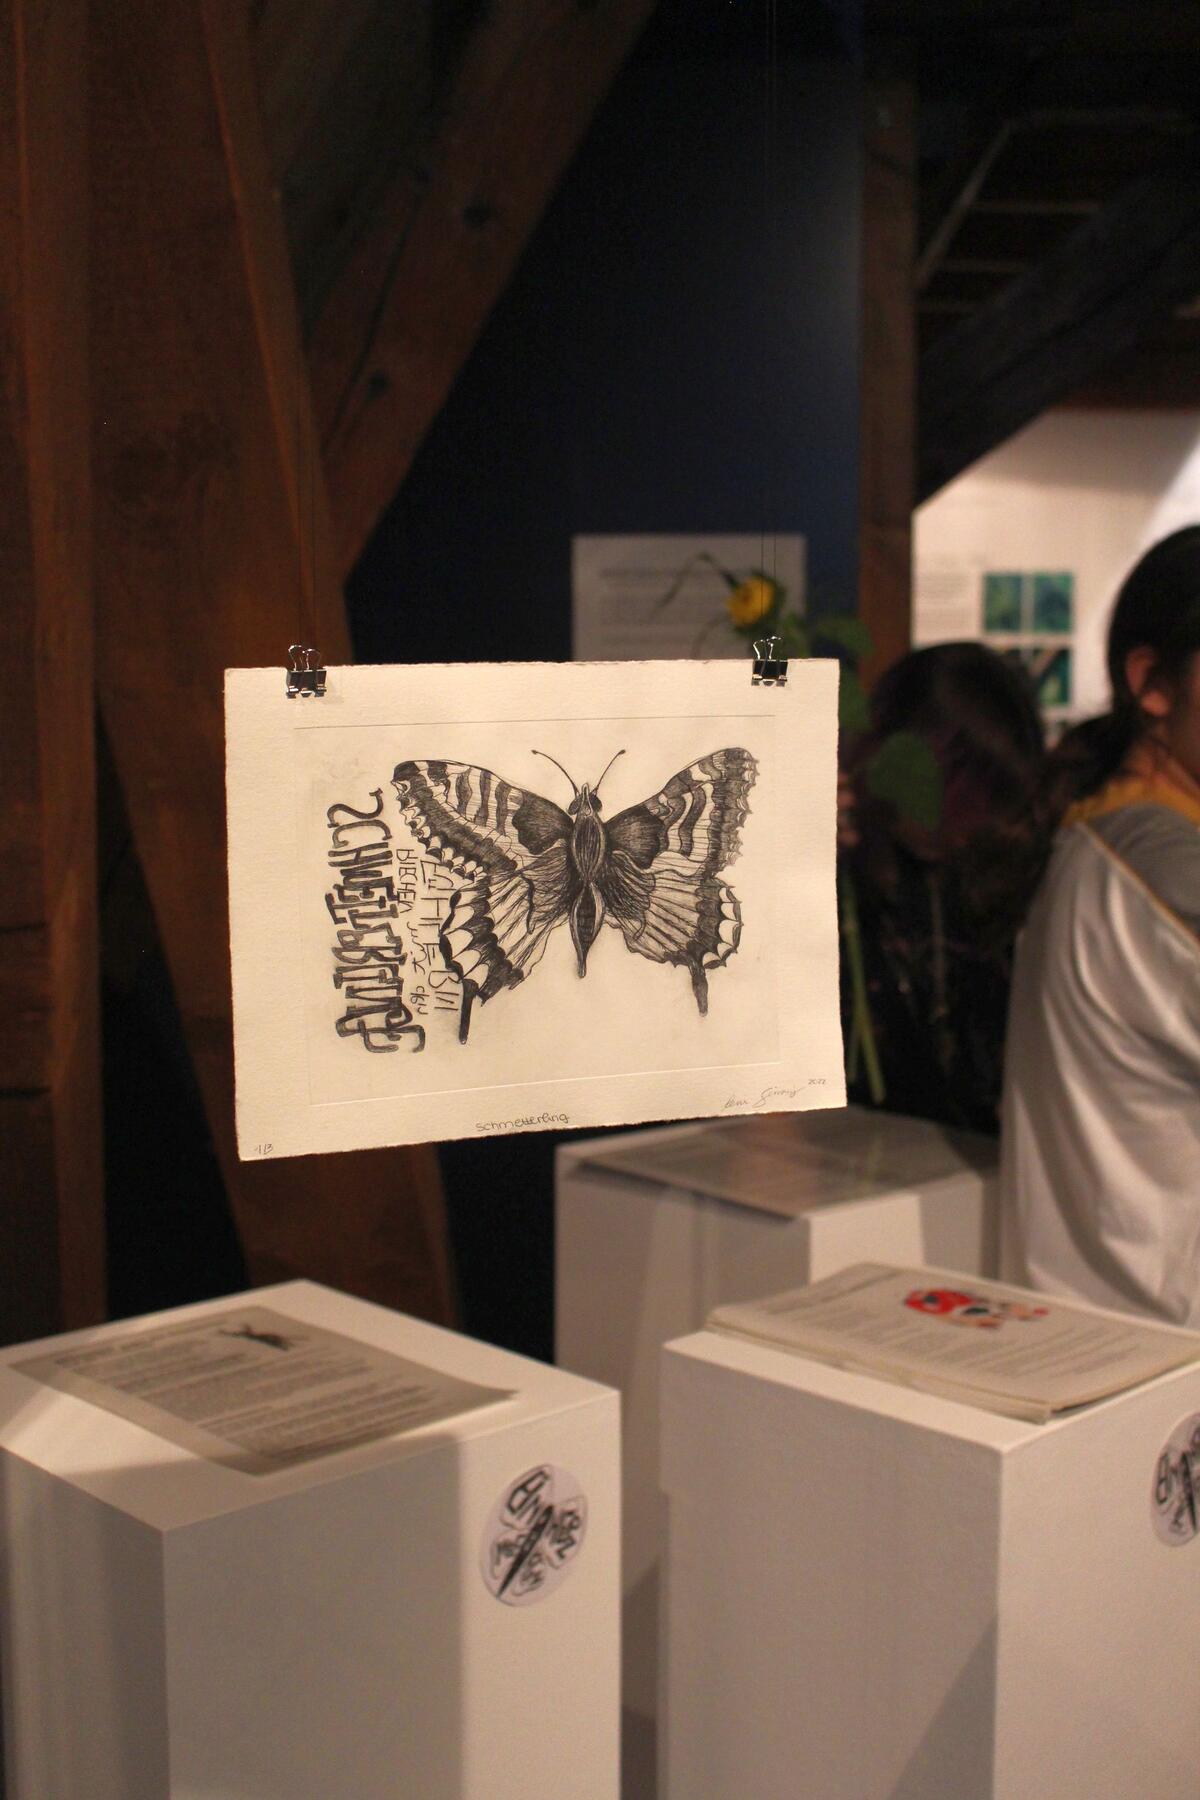 Bild vergrößern: Ausstellungsraum mit Schülerzeichnung eines Schmetterlings.